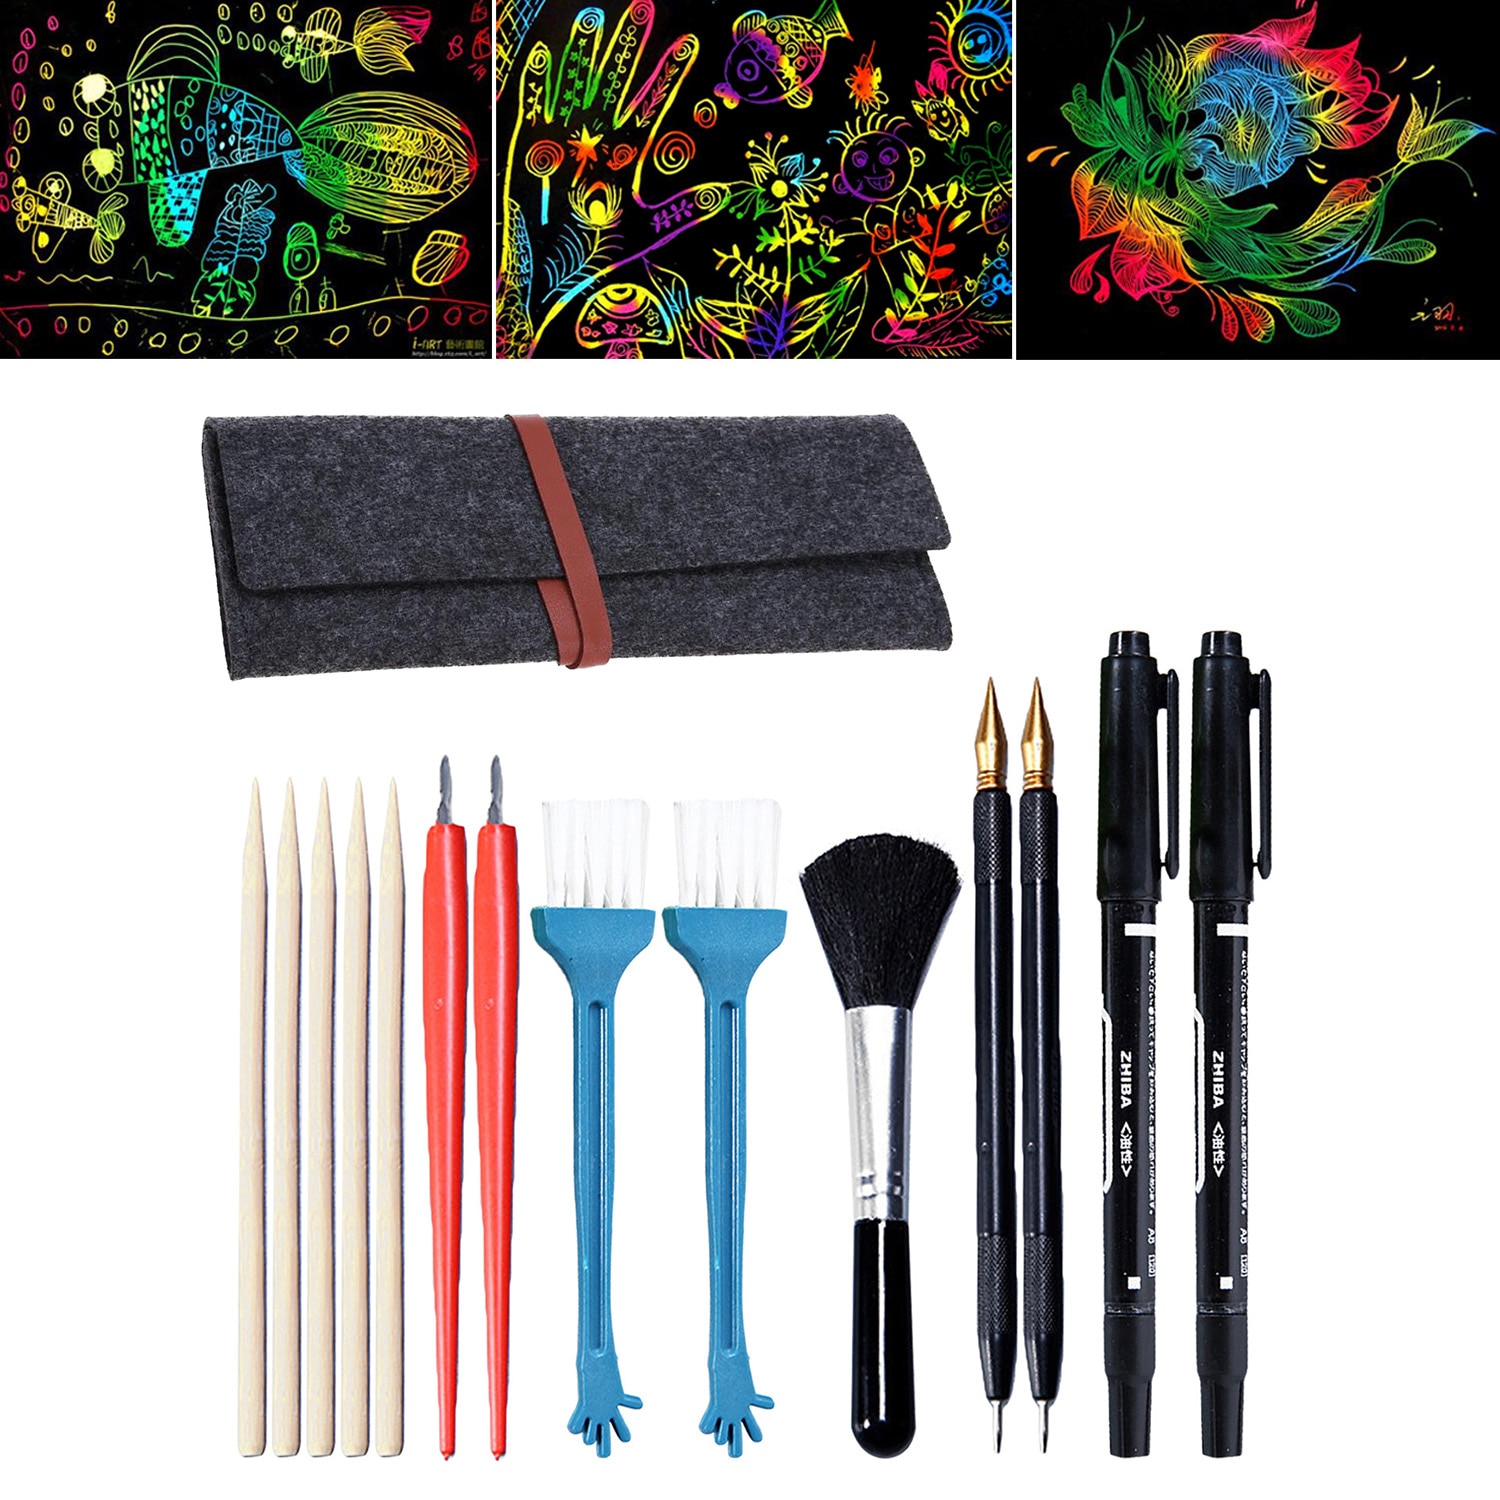 15 stk maleri tegning ridse værktøjer sæt med bambus pinde skraber ridse pen børste opbevaringspose til børn diy ridse legetøj